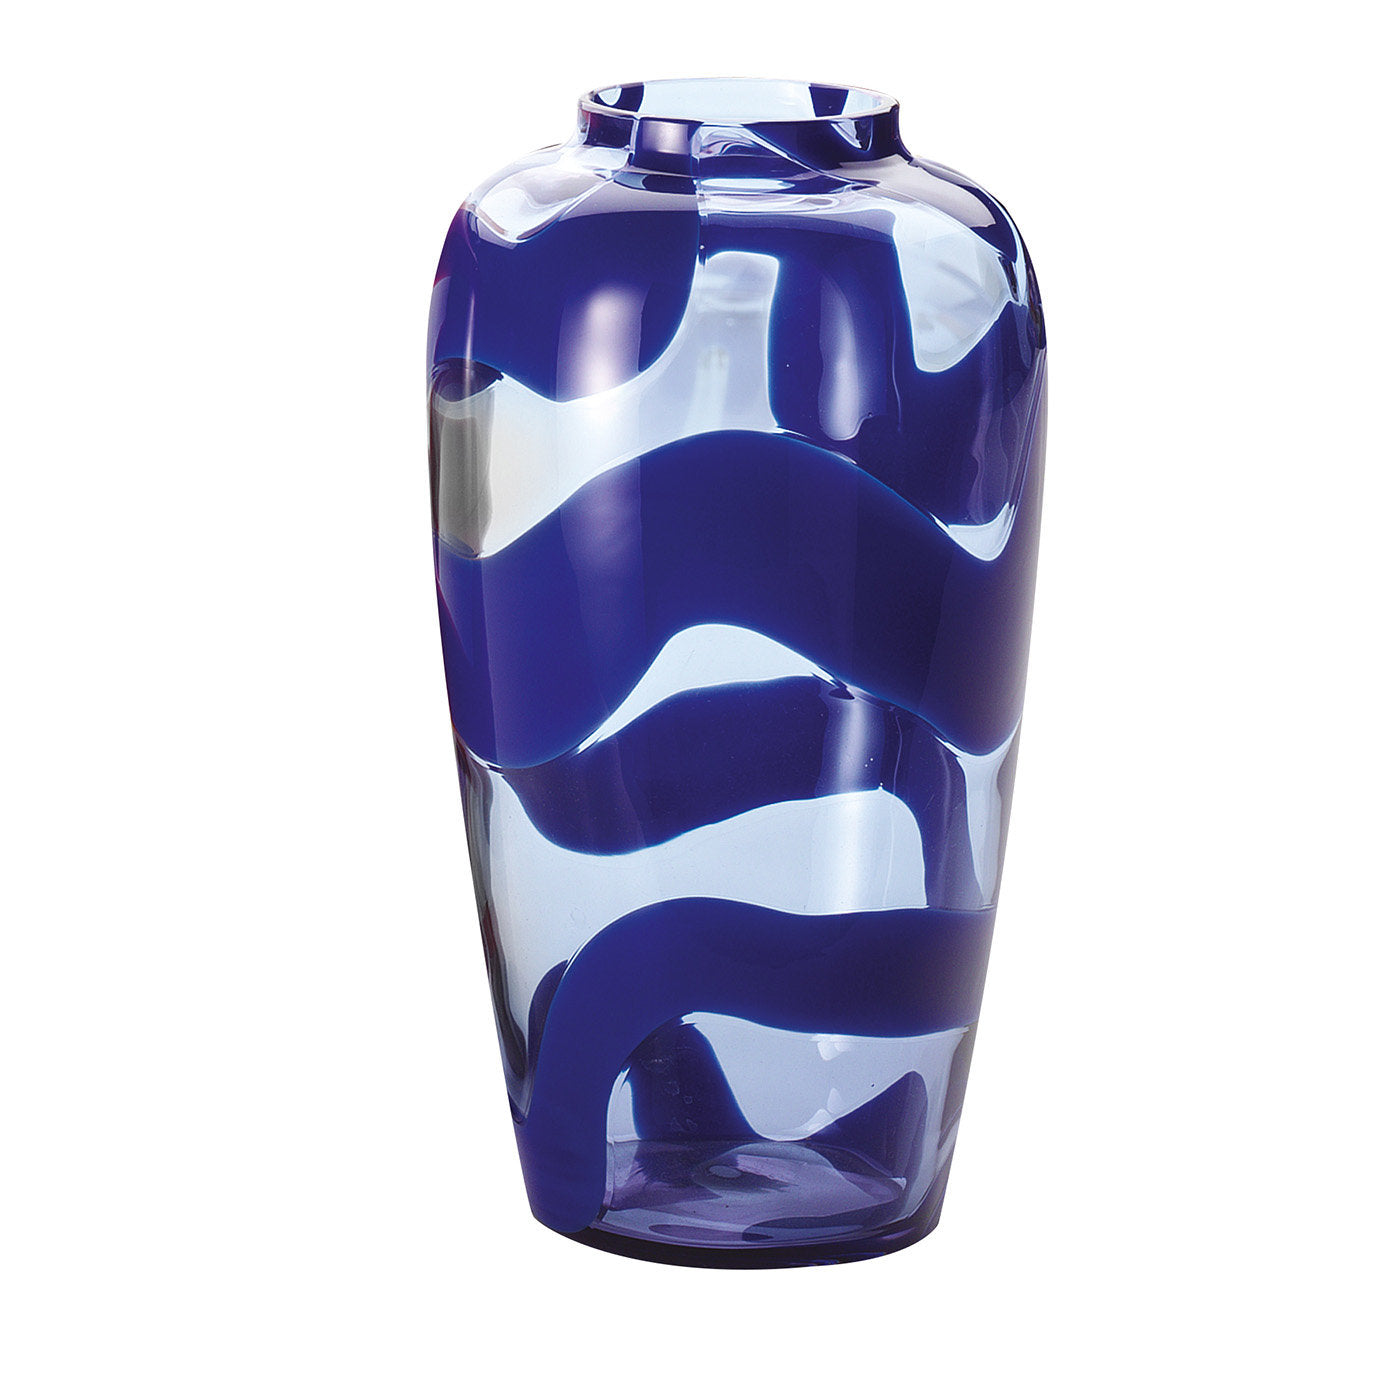 Grand vase bleu en forme de serpent par NasonMoretti et Stefano Marcato - Vue principale